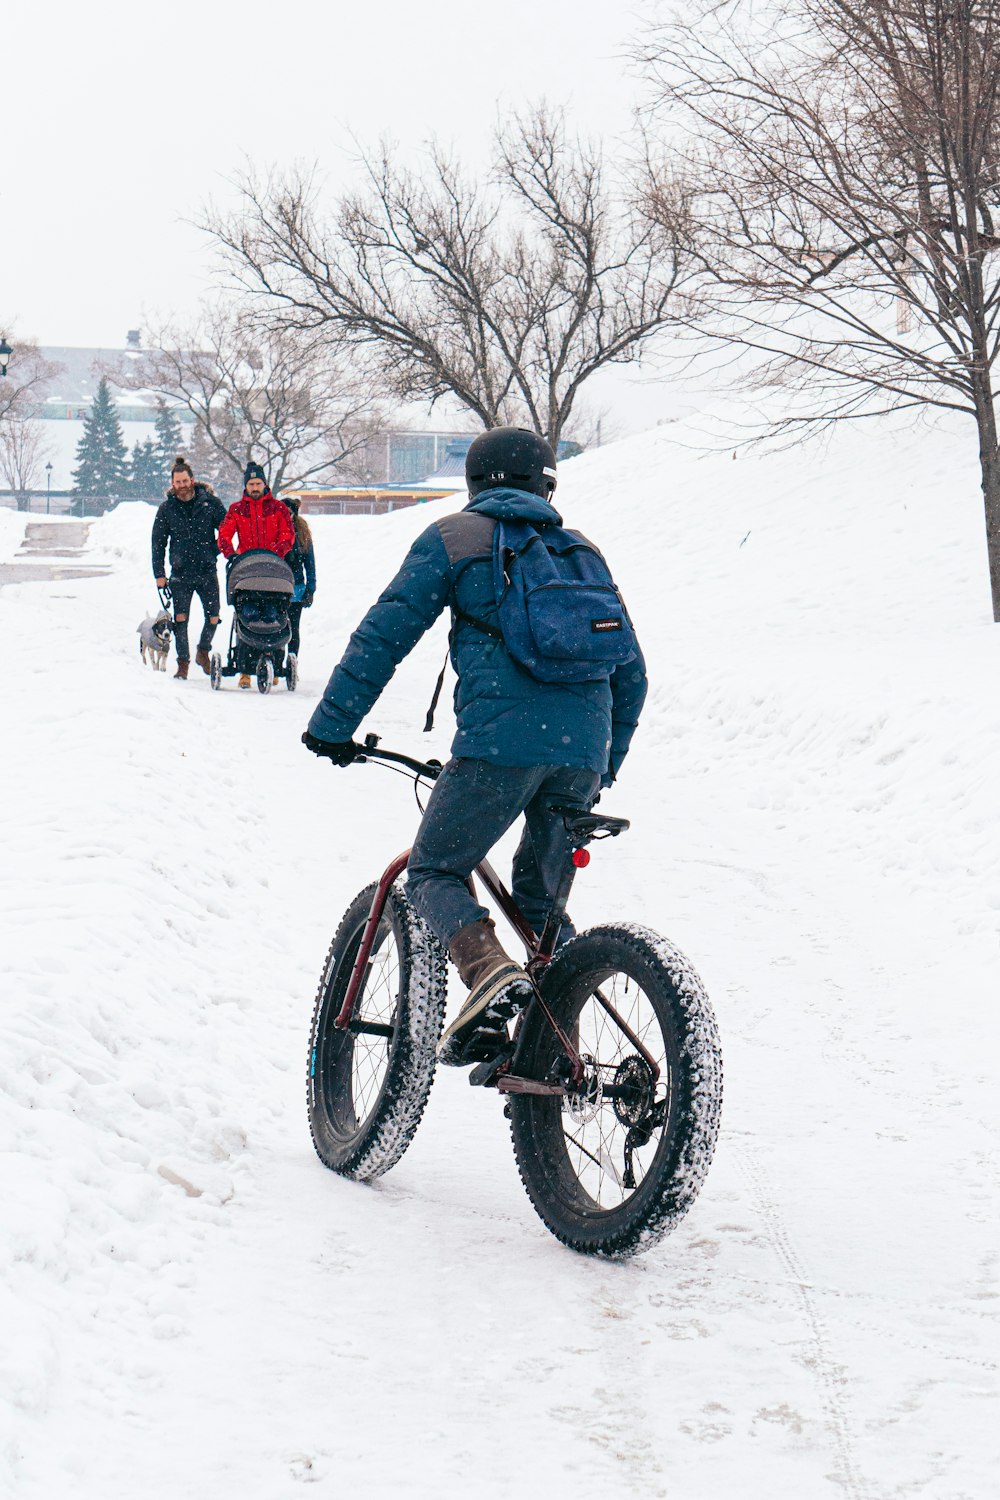 Mann in blauer Jacke fährt tagsüber auf schwarzem BMX-Bike auf schneebedecktem Untergrund